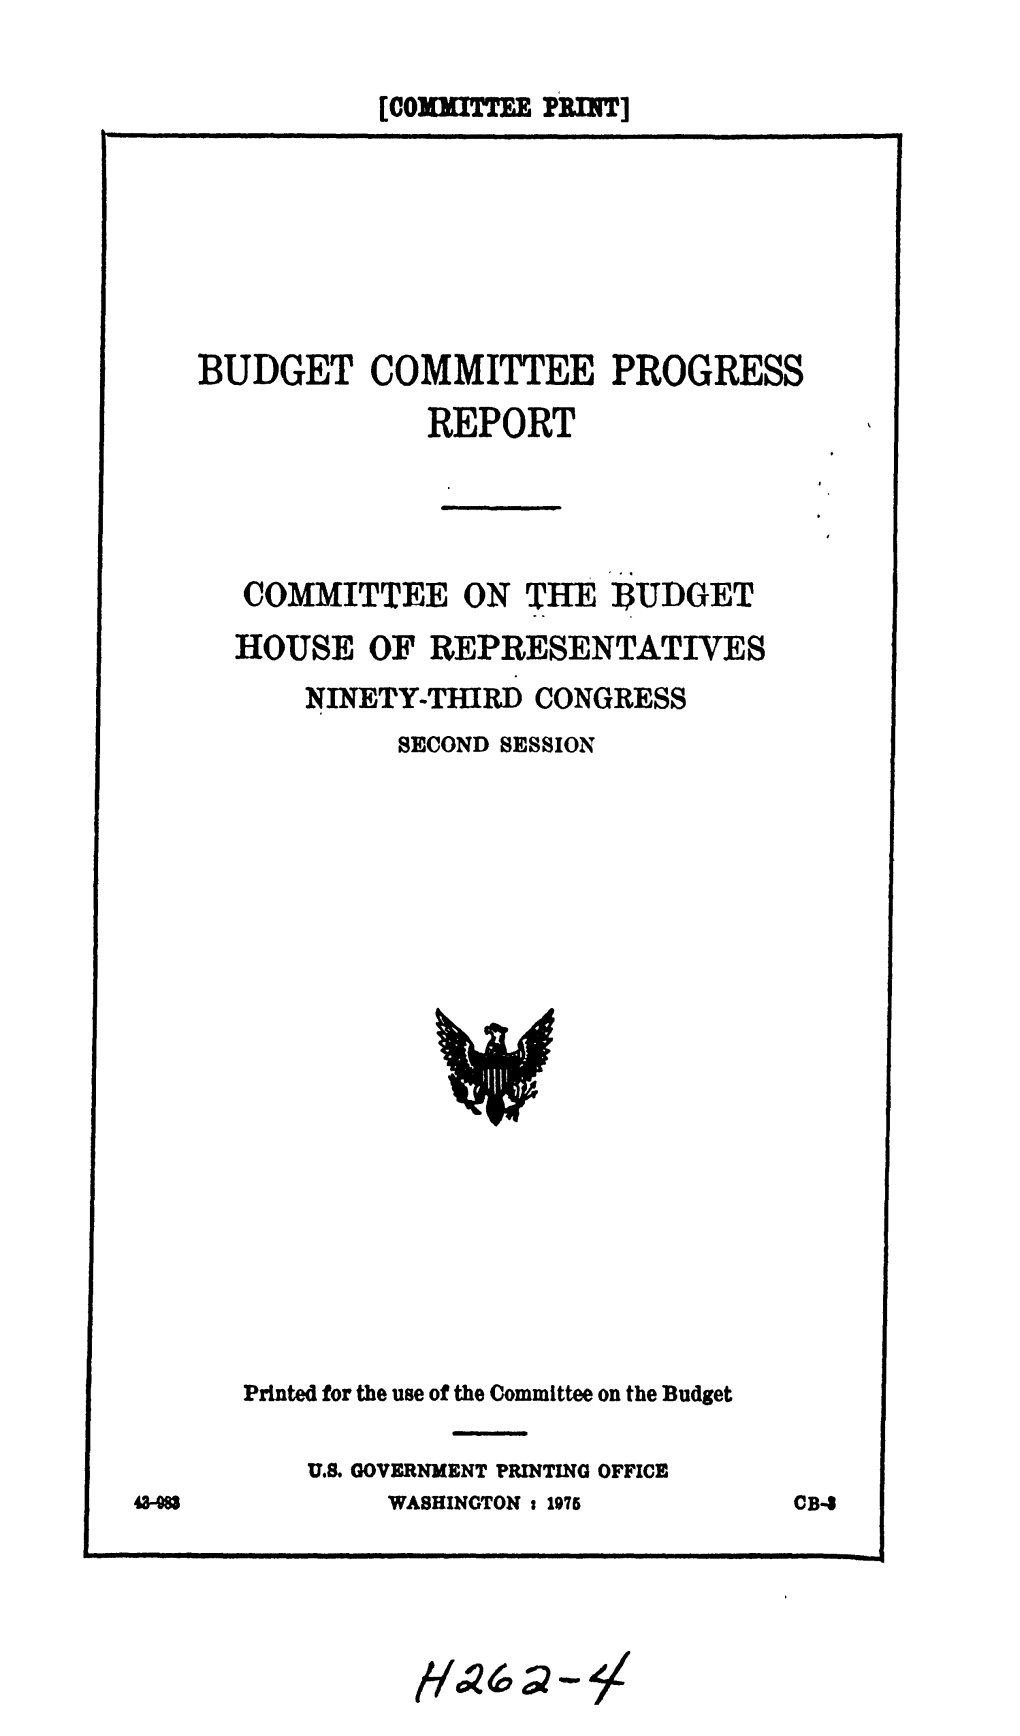 Budget Committee Progress Report